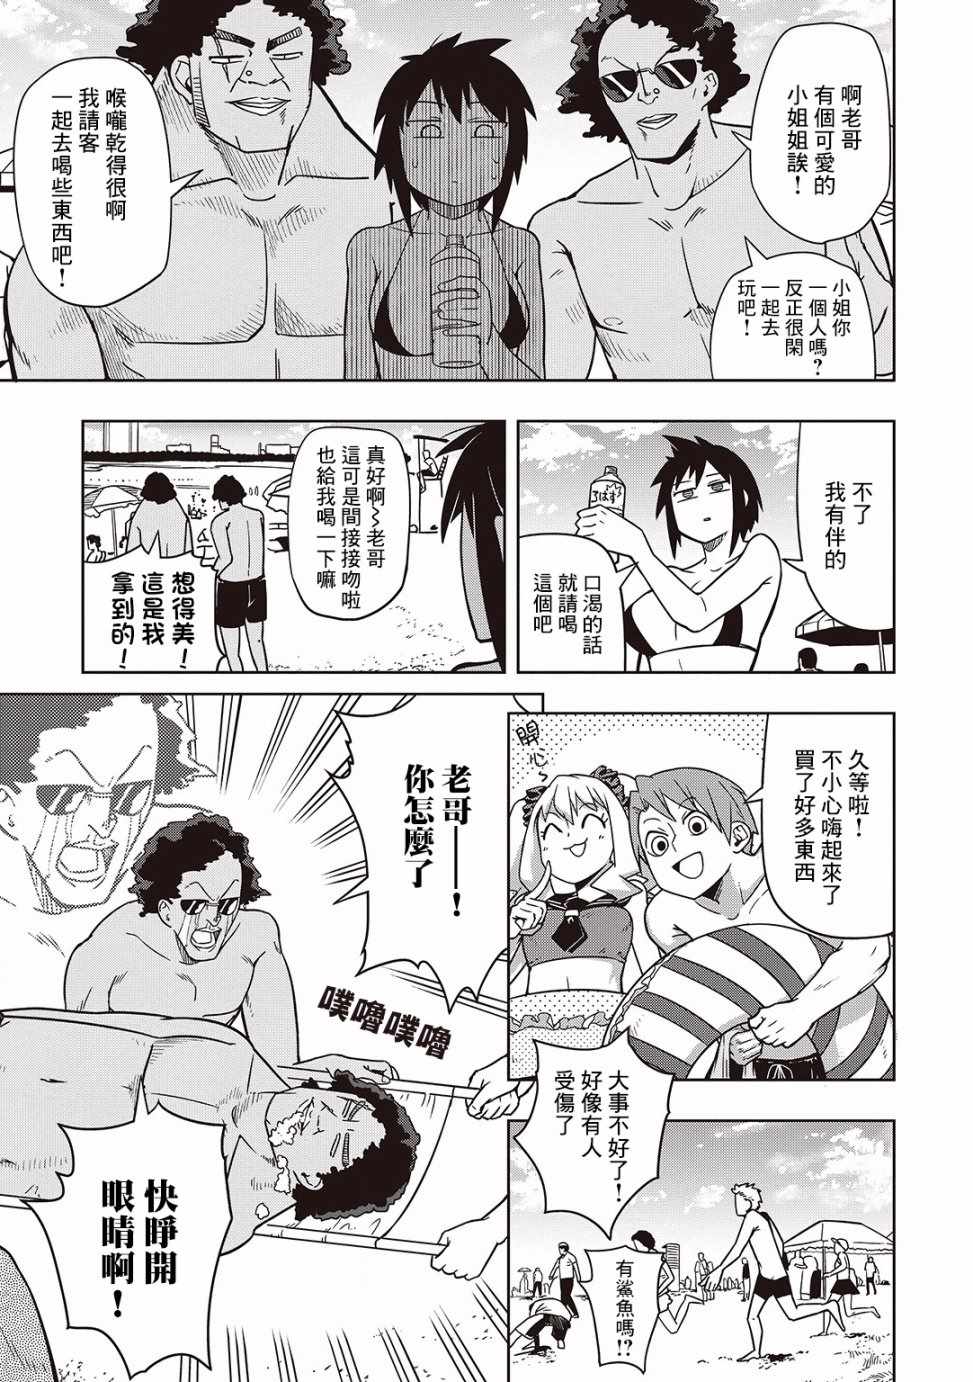 《樱井超Energy的短篇集》漫画 07 死亡三角恋2